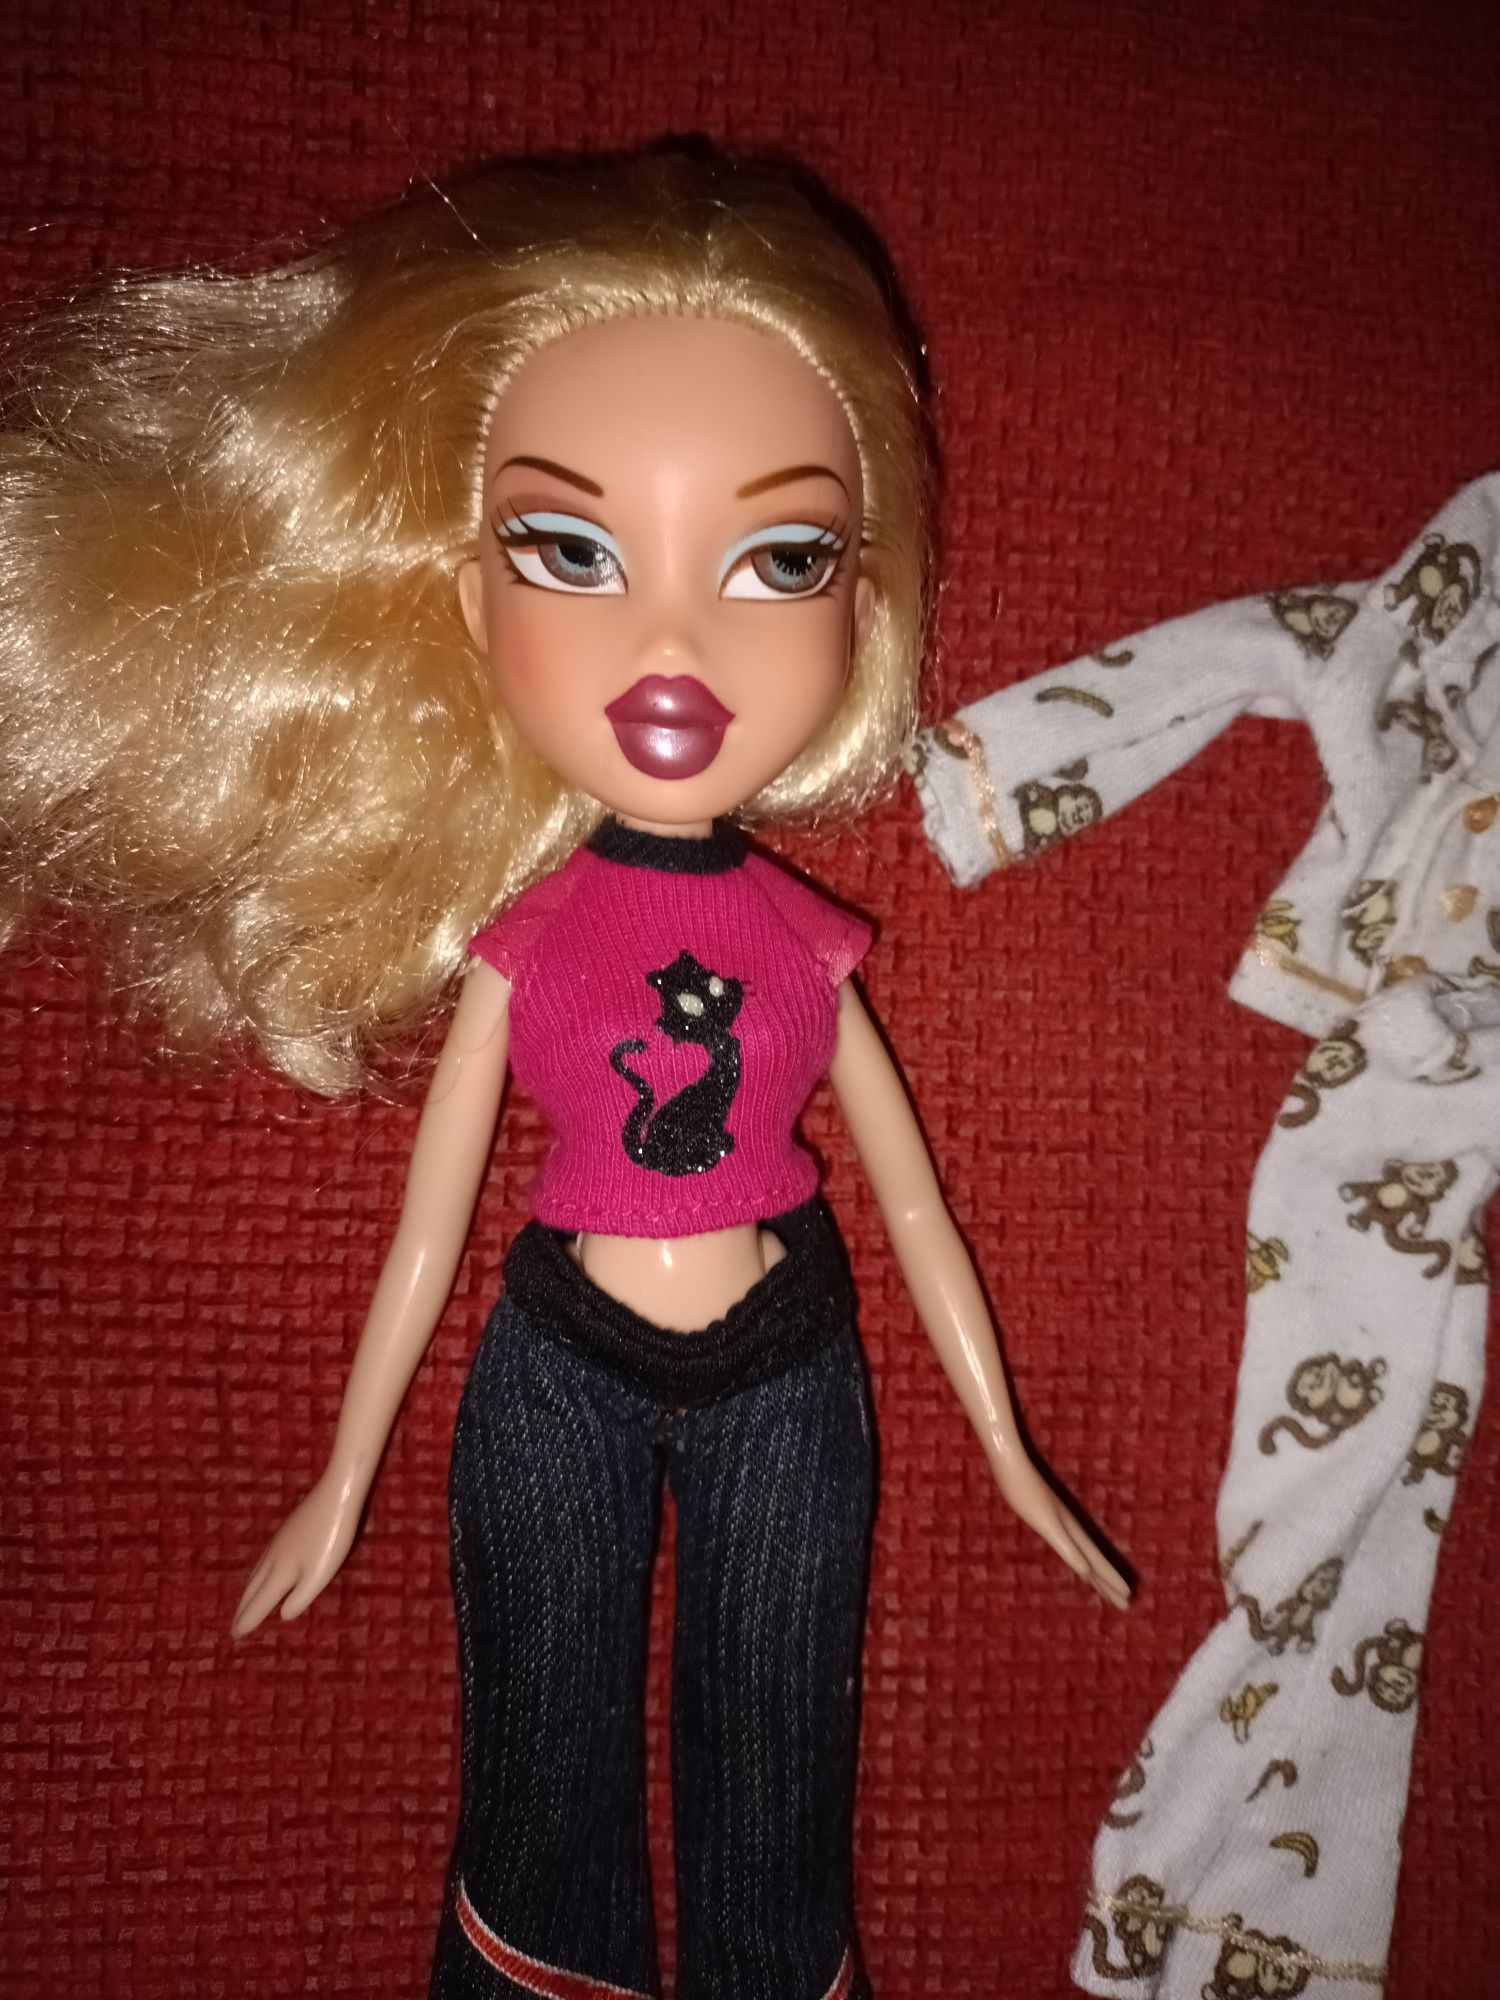 Papusa Bratz Cloe seria Head Gamez, gen Barbie